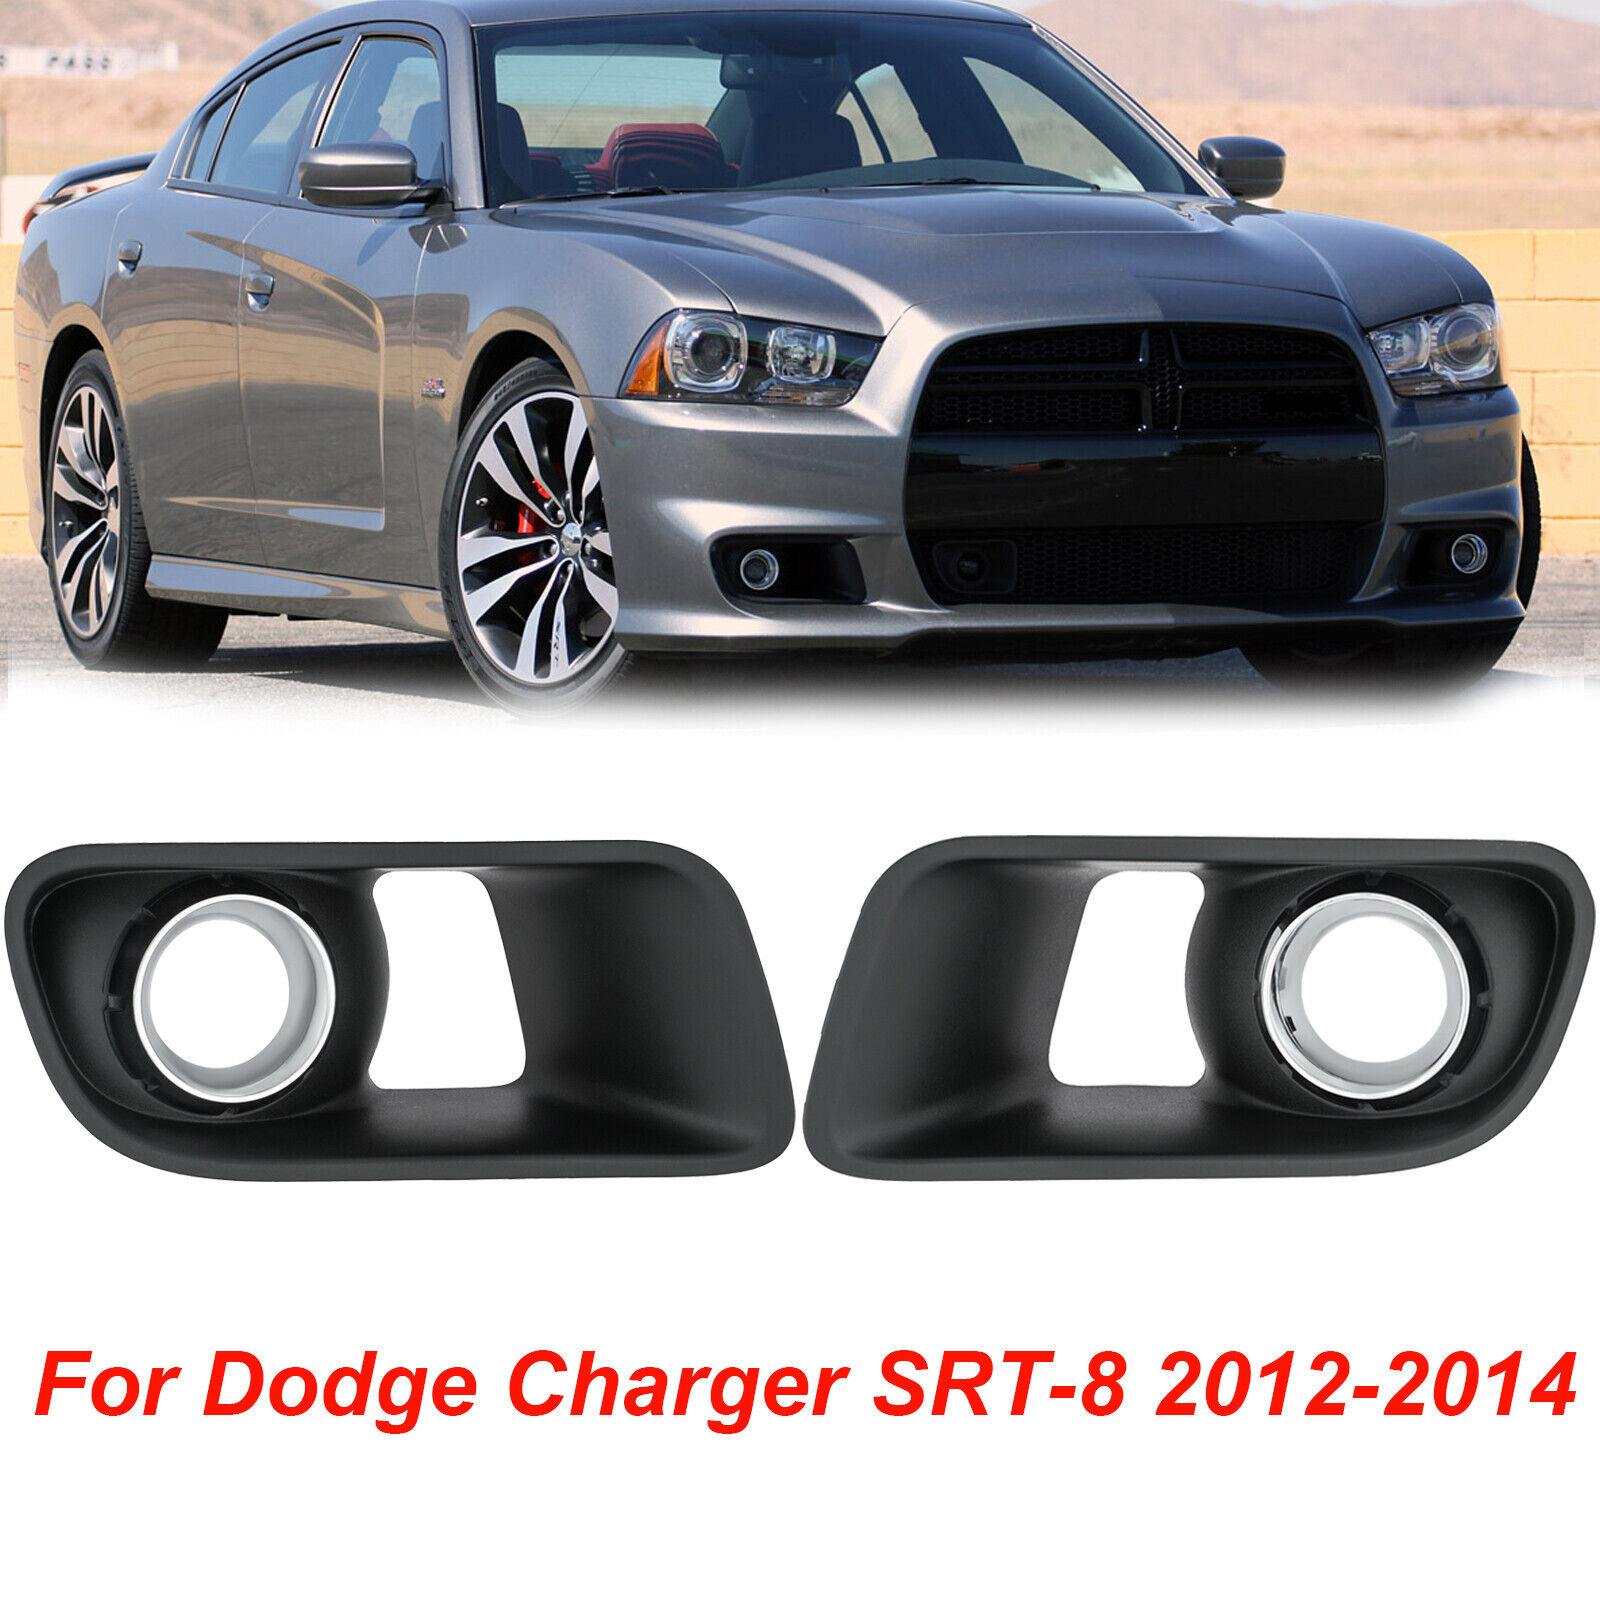 For Dodge Charger SRT-8 2012-2014 Pair Fog Light Lamp Chrome Bezel Cover Grilles